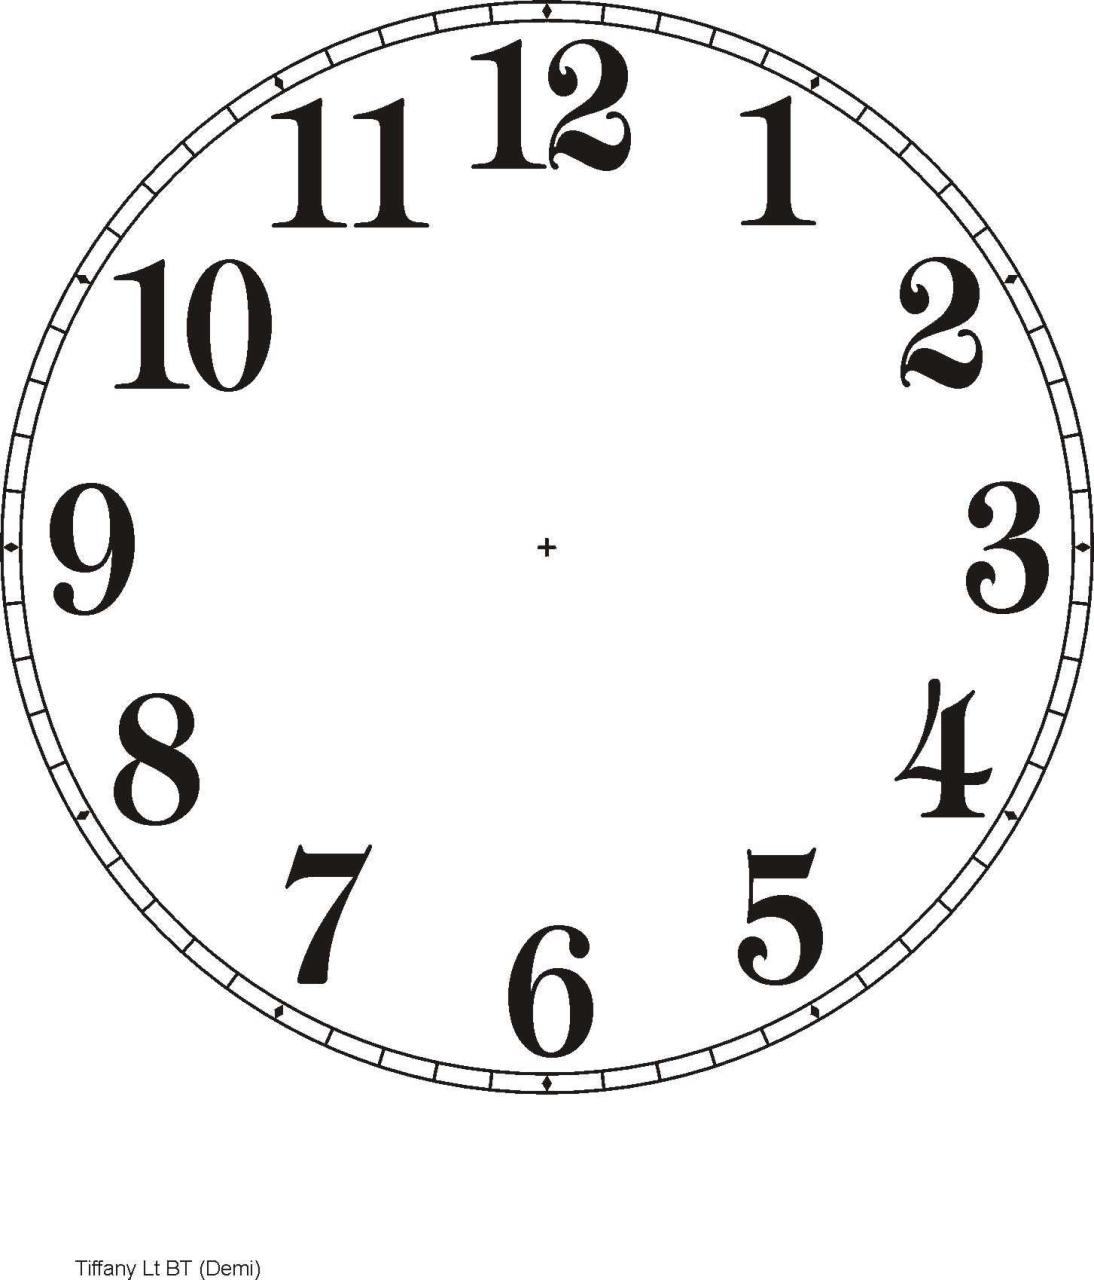 Template Free Printable Blank Clock Worksheets